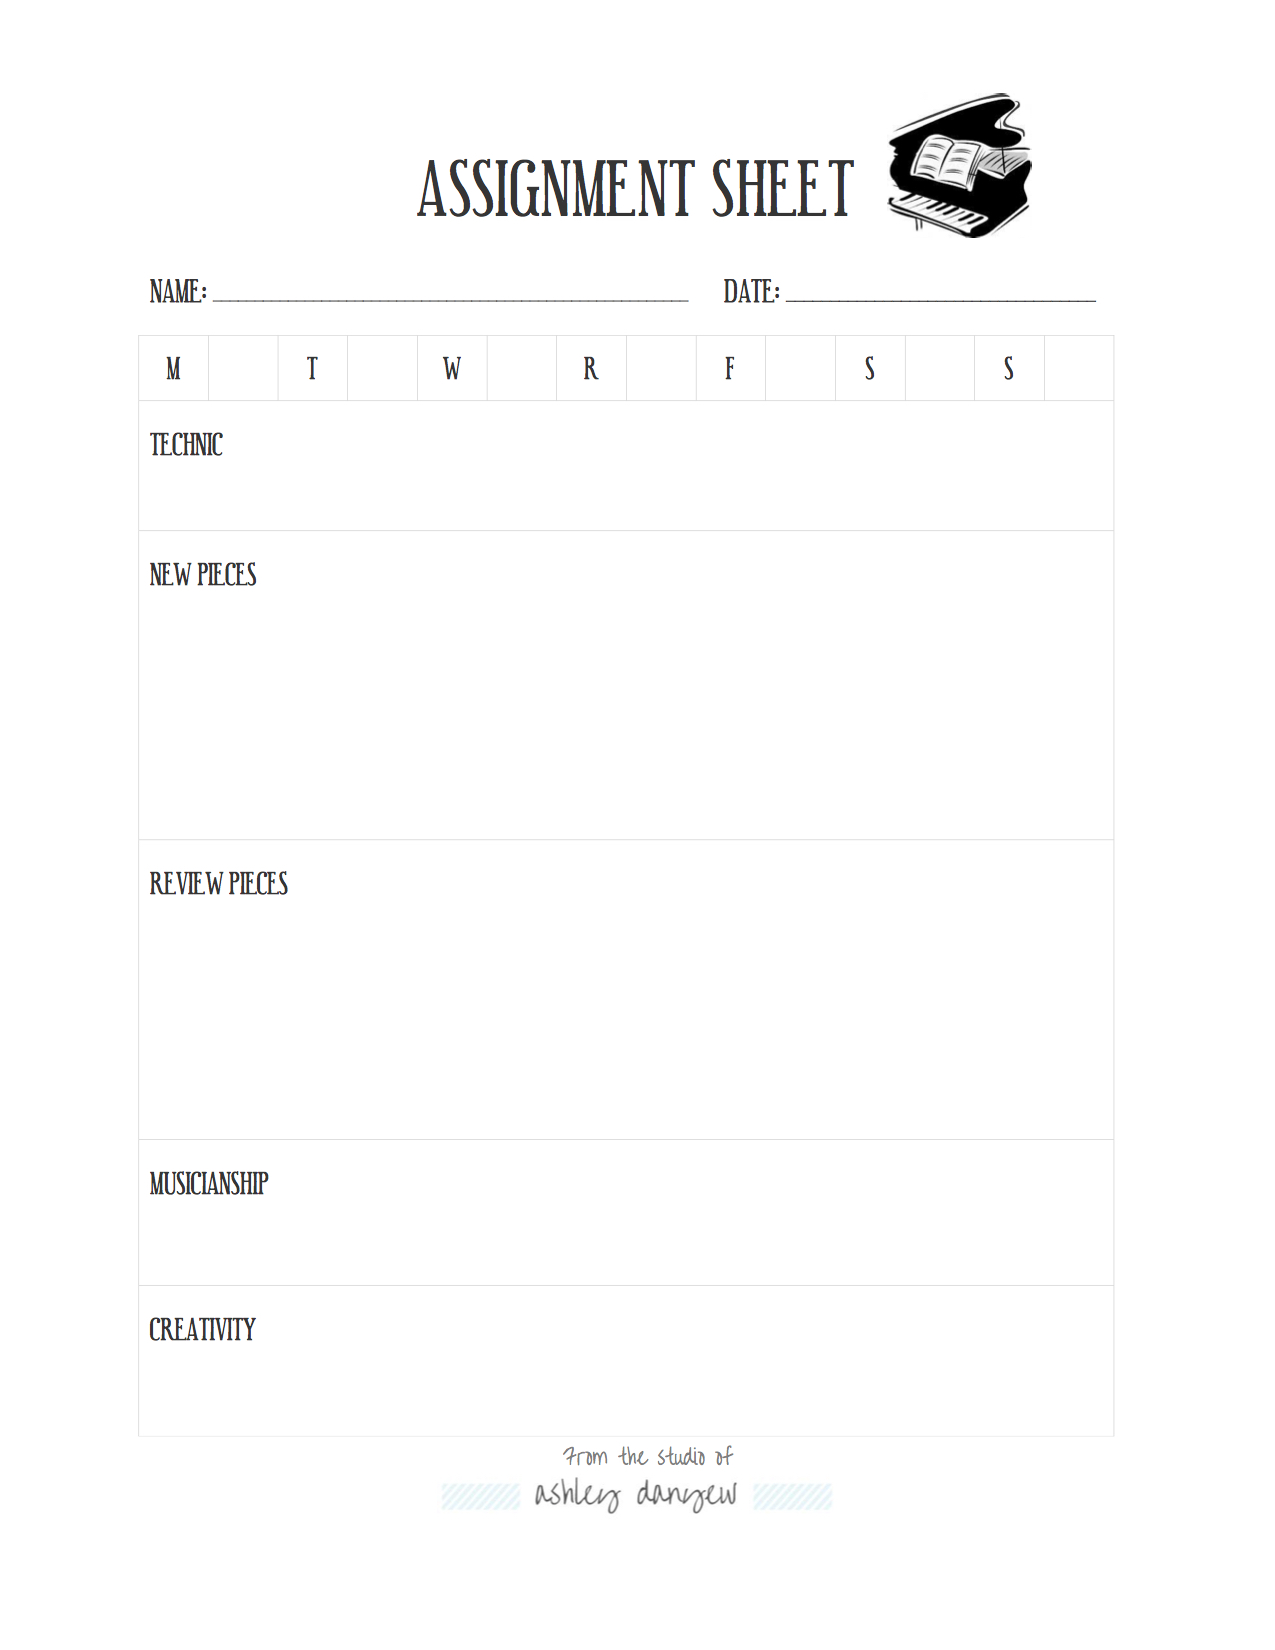 Piano Assignment Sheet.jpg